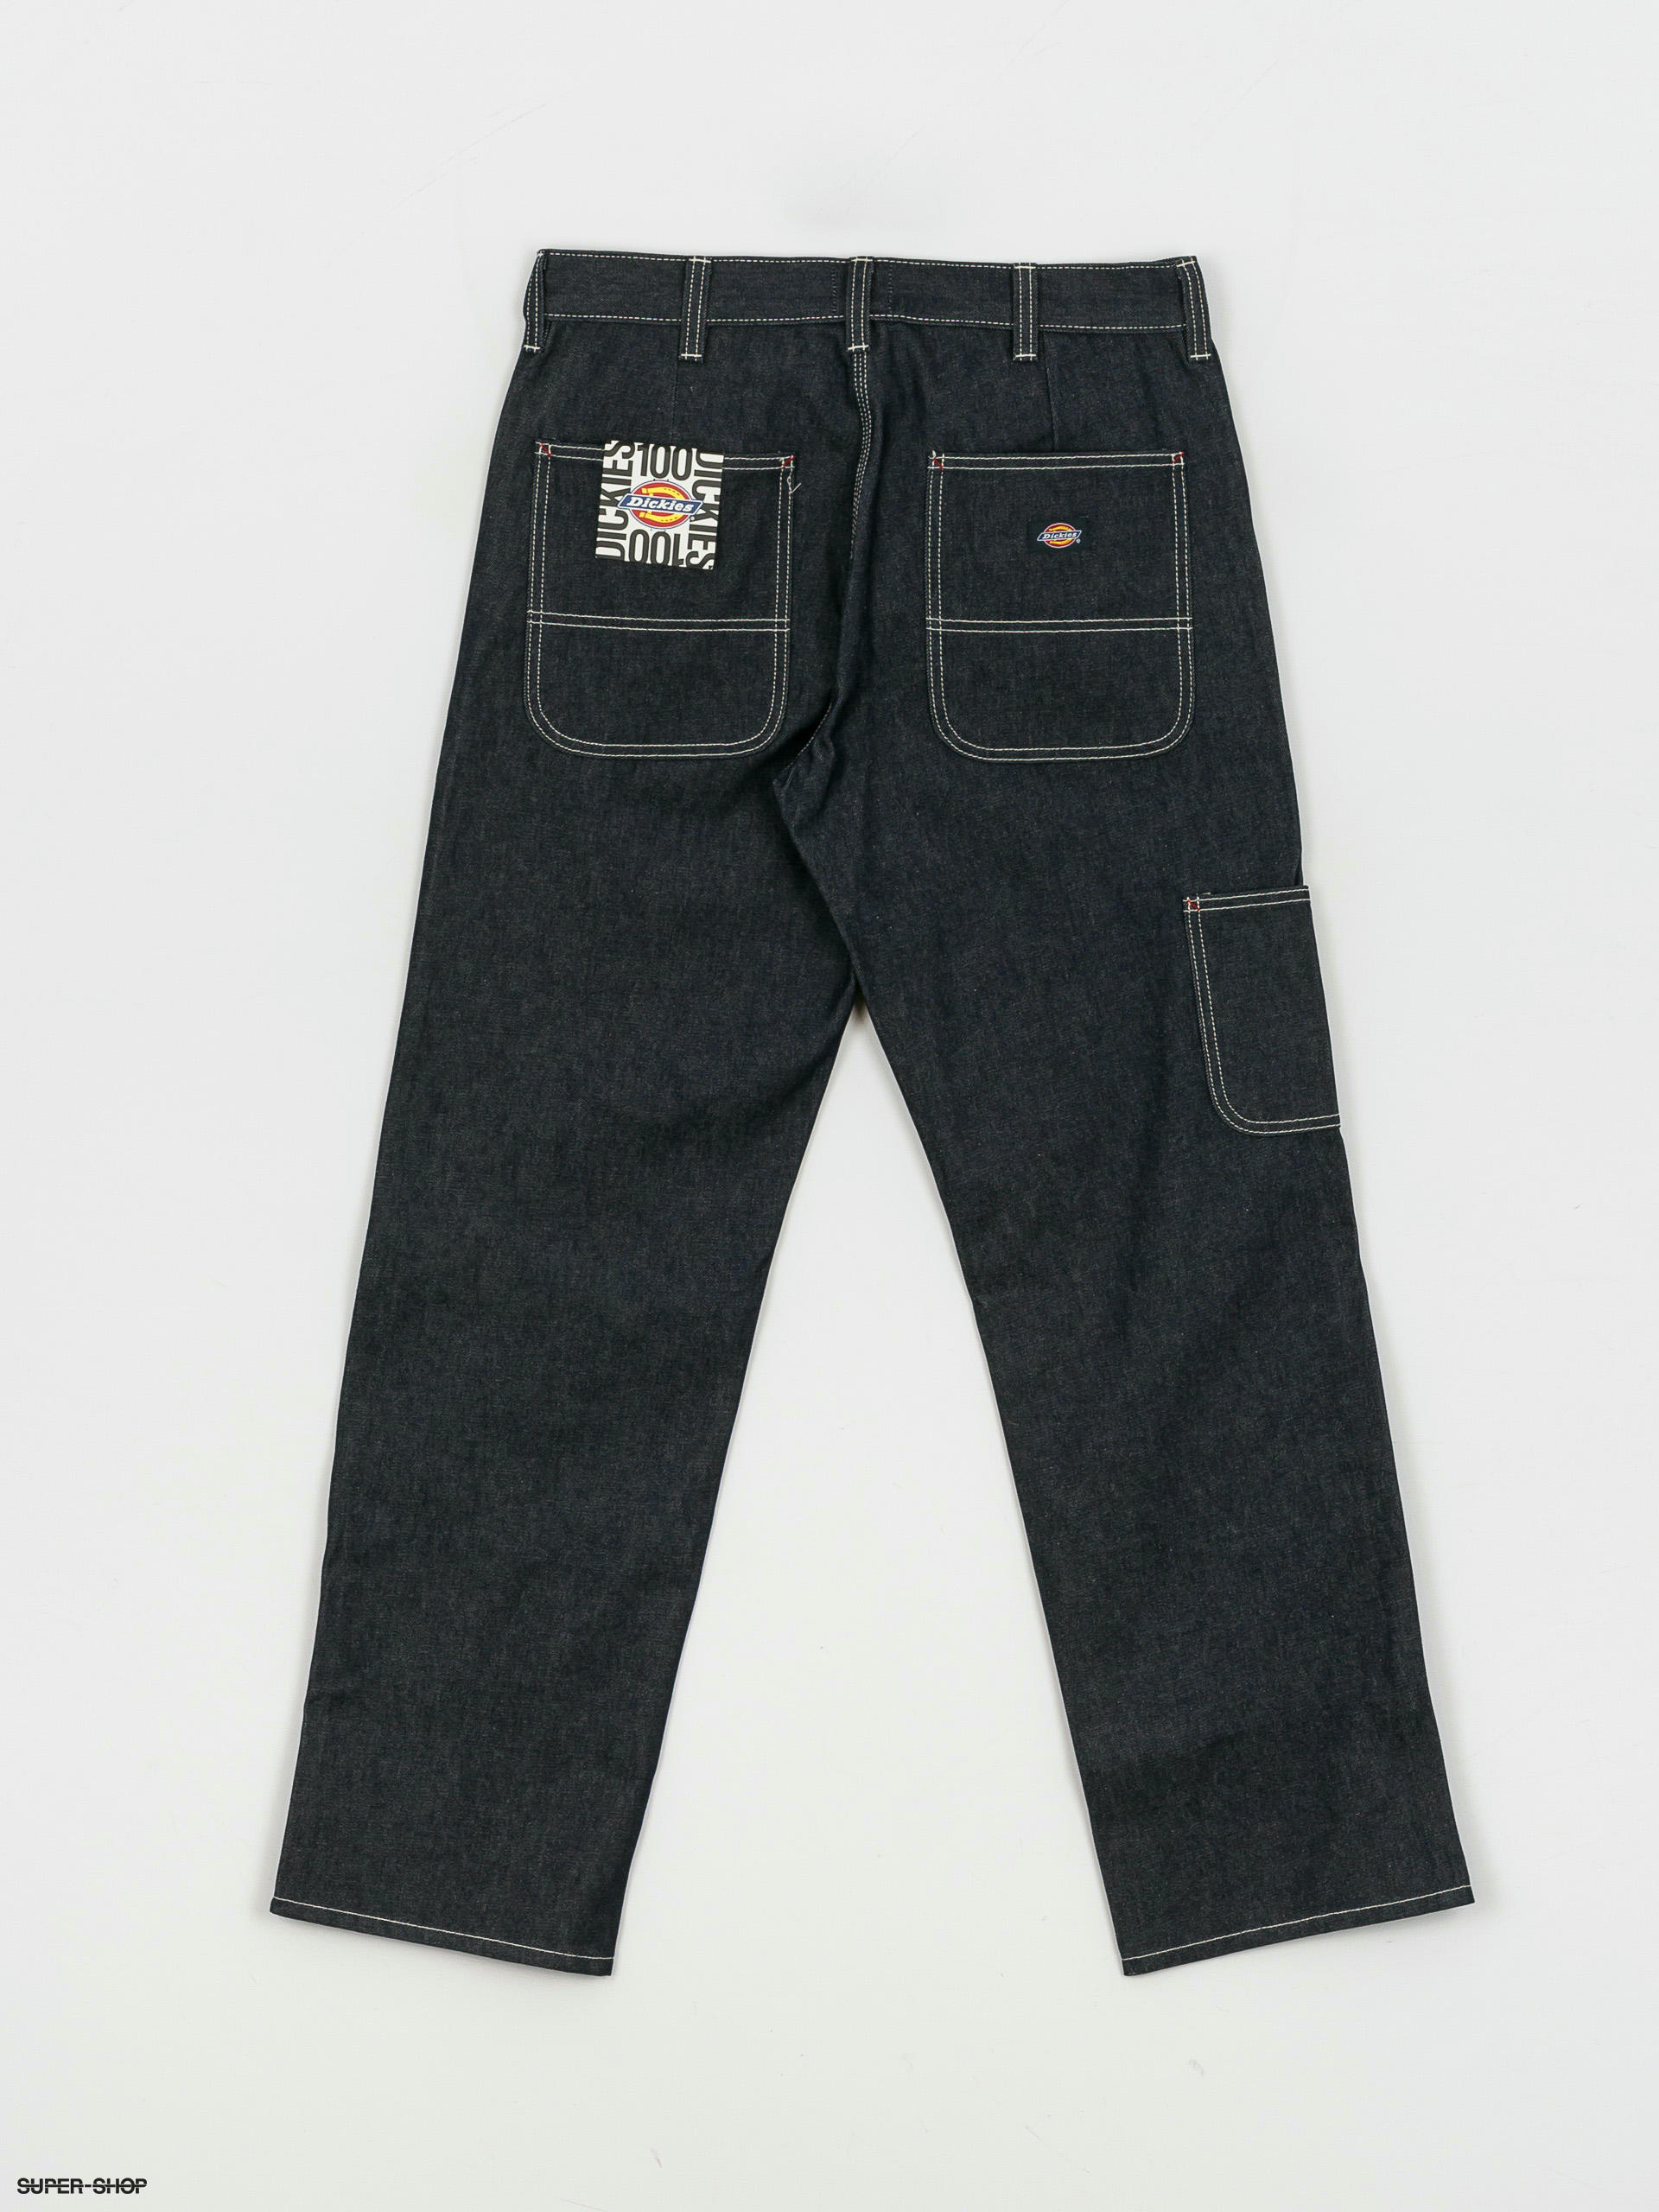 Workrite Dickies FR 4881 Jeans - 14 oz Amtex 100% Cotton (old p/n